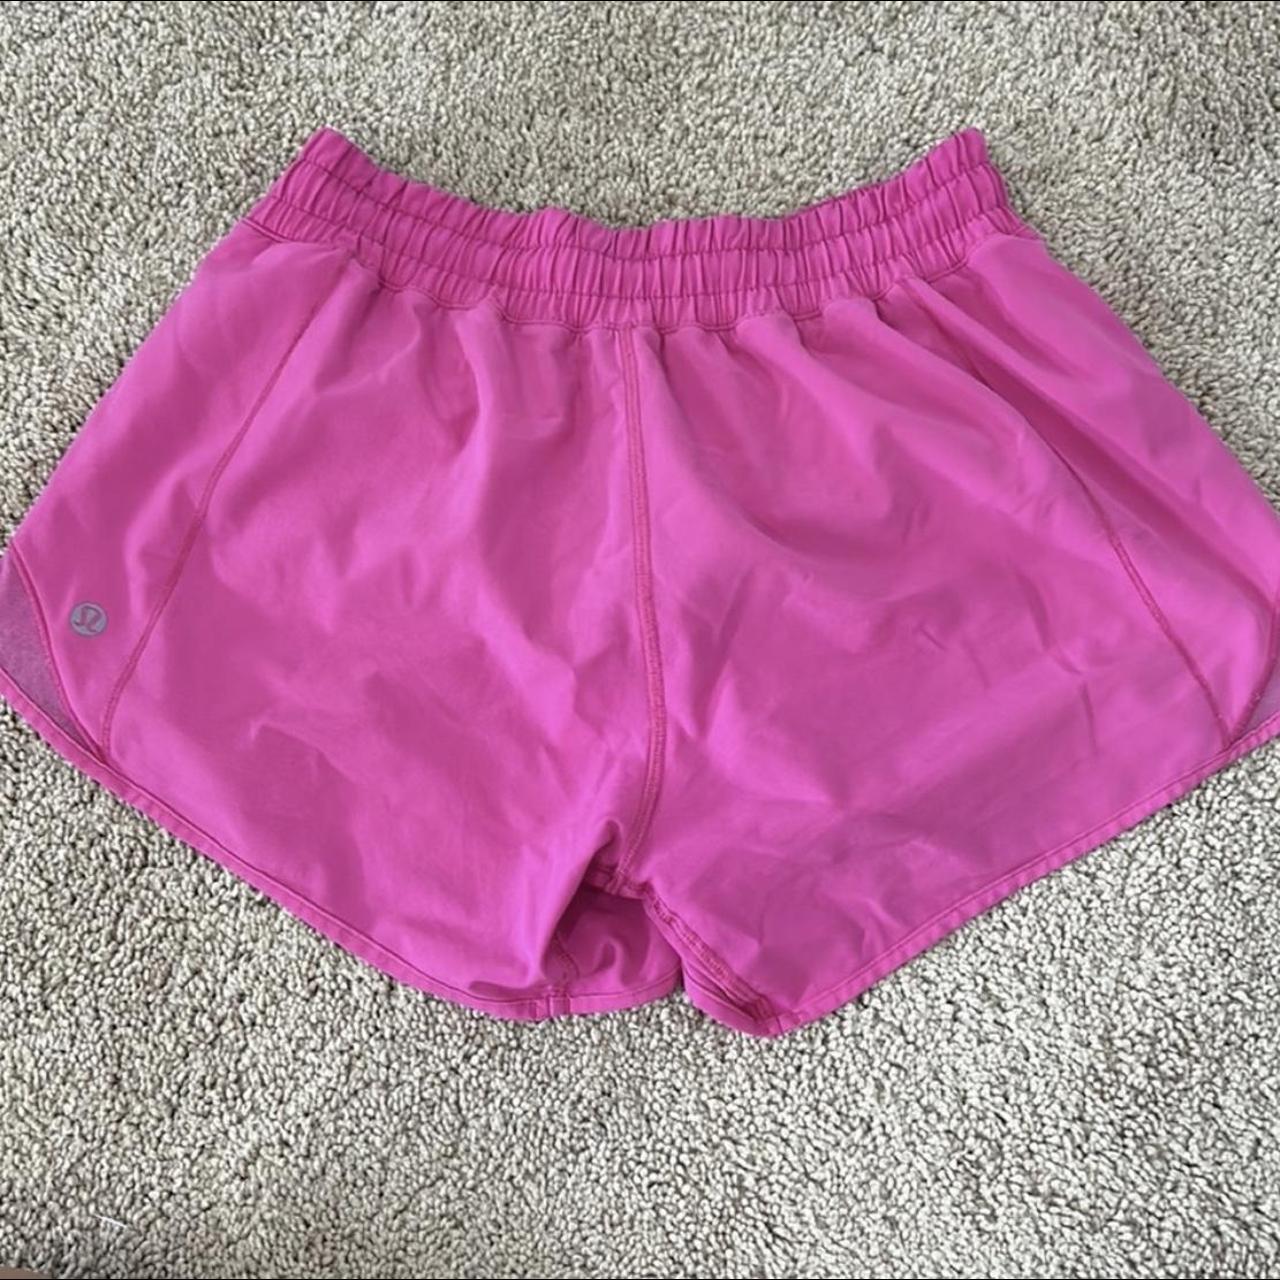 Lululemon Hotty Hot Sonic Pink Shorts 4